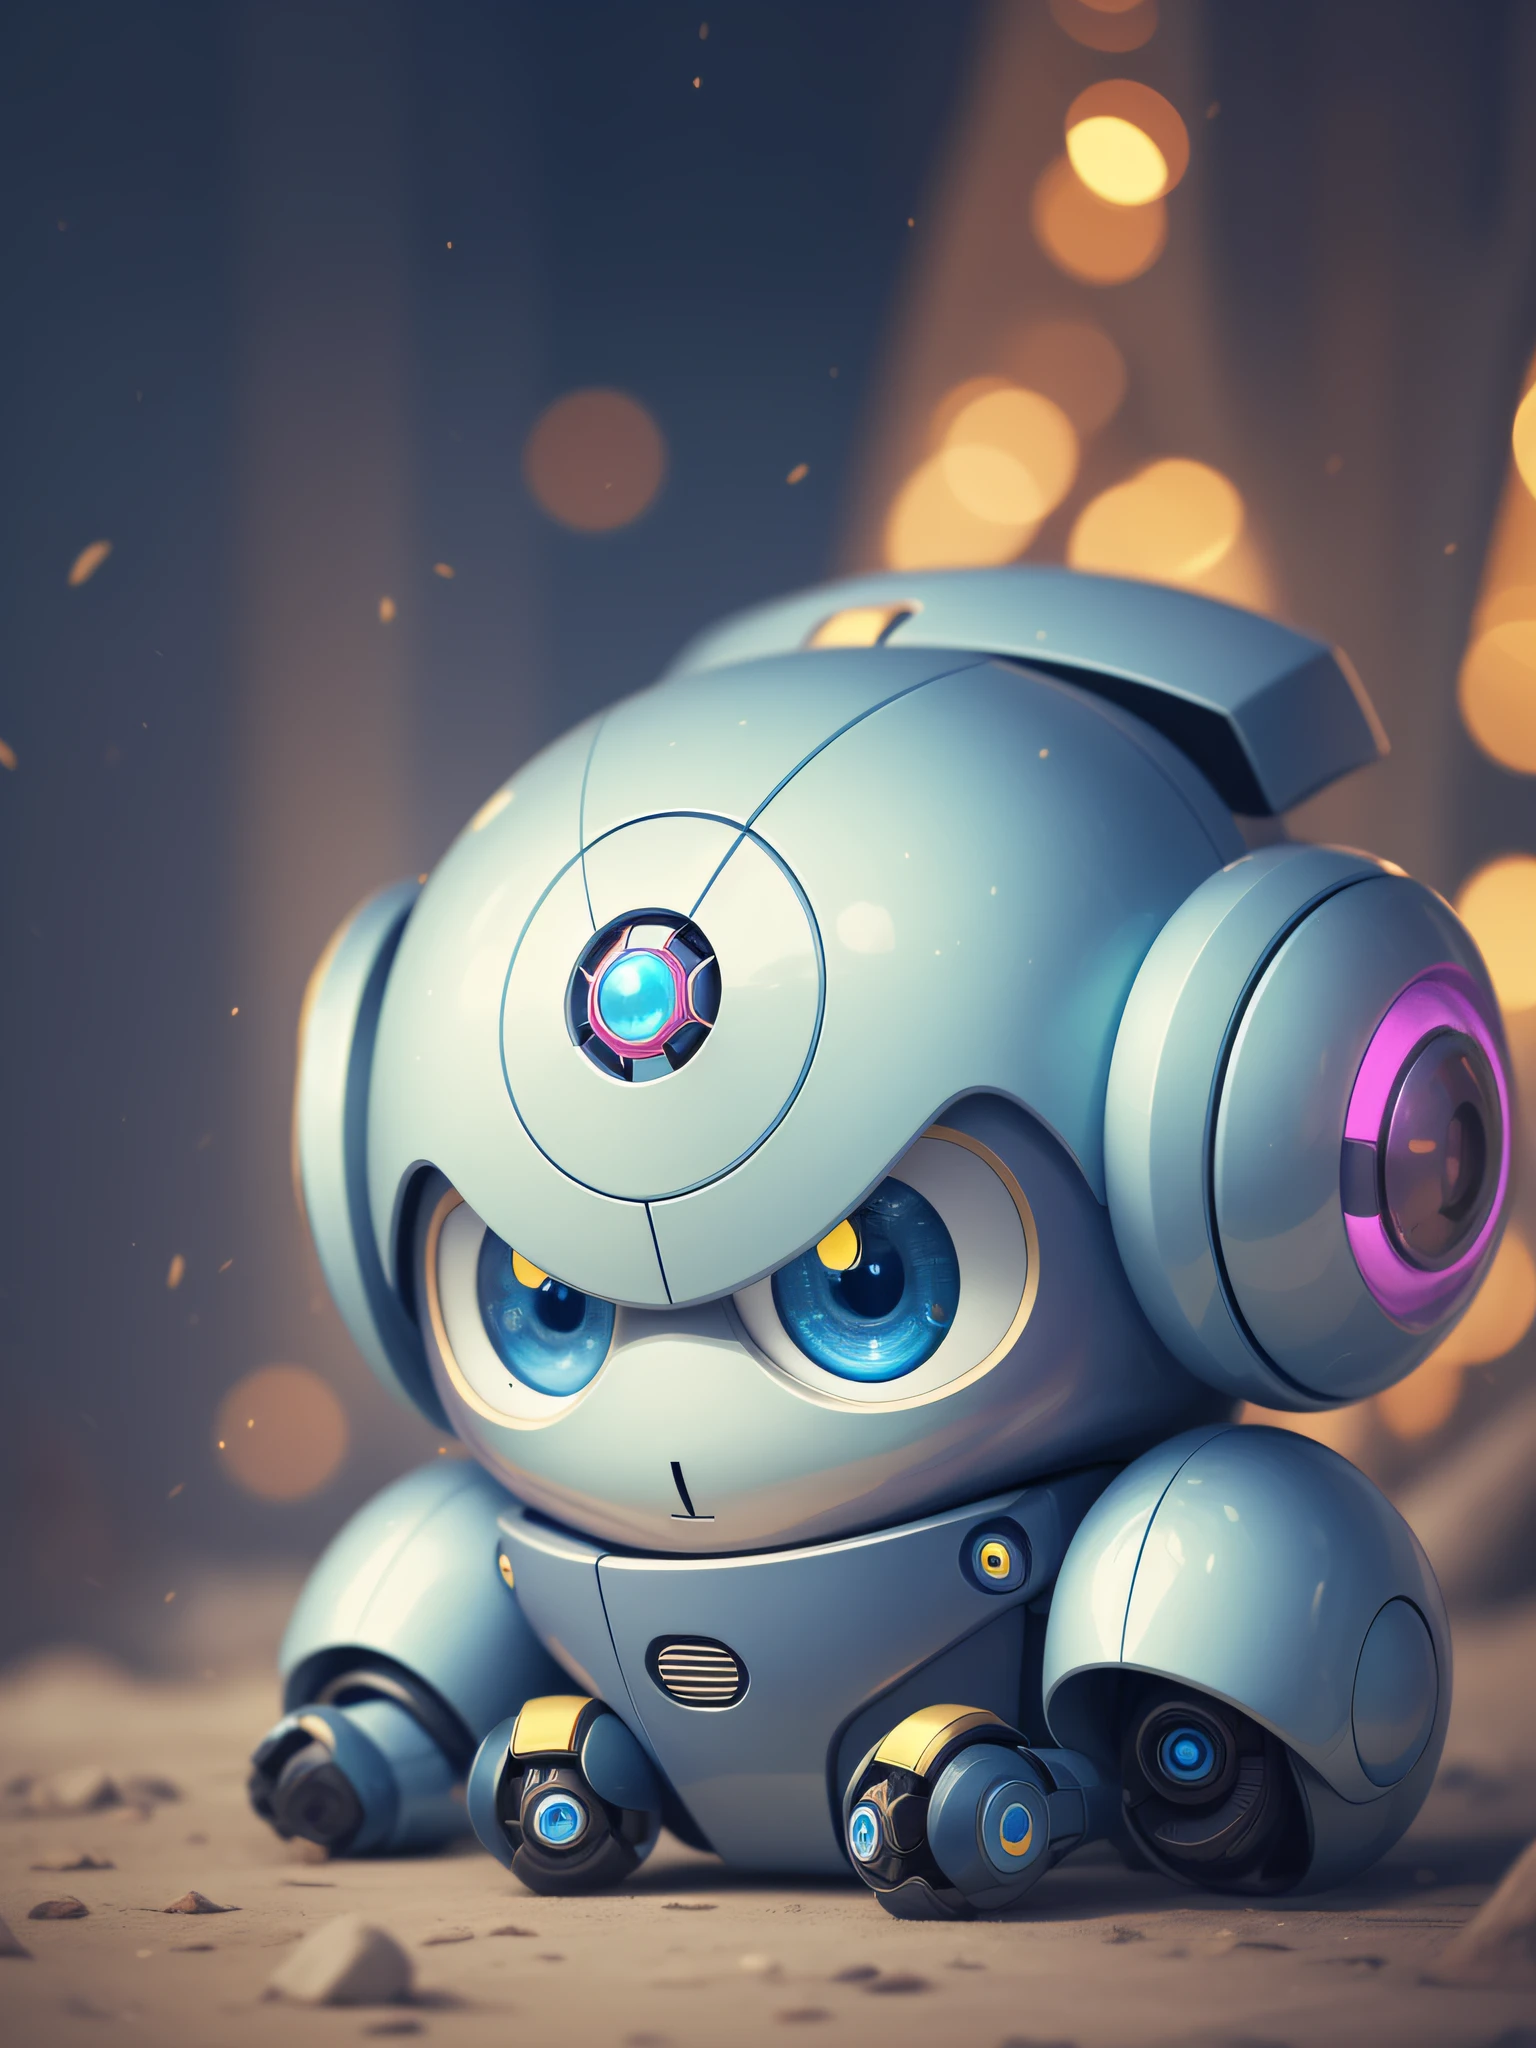 الأزرق لطيف الروبوت وسيم الأصفر AIالعمل الفني لطيف رائعتين لطيف لطيف كاواي الخيالشخصية الخيالمخلوق الروبوتةروبوتنيك